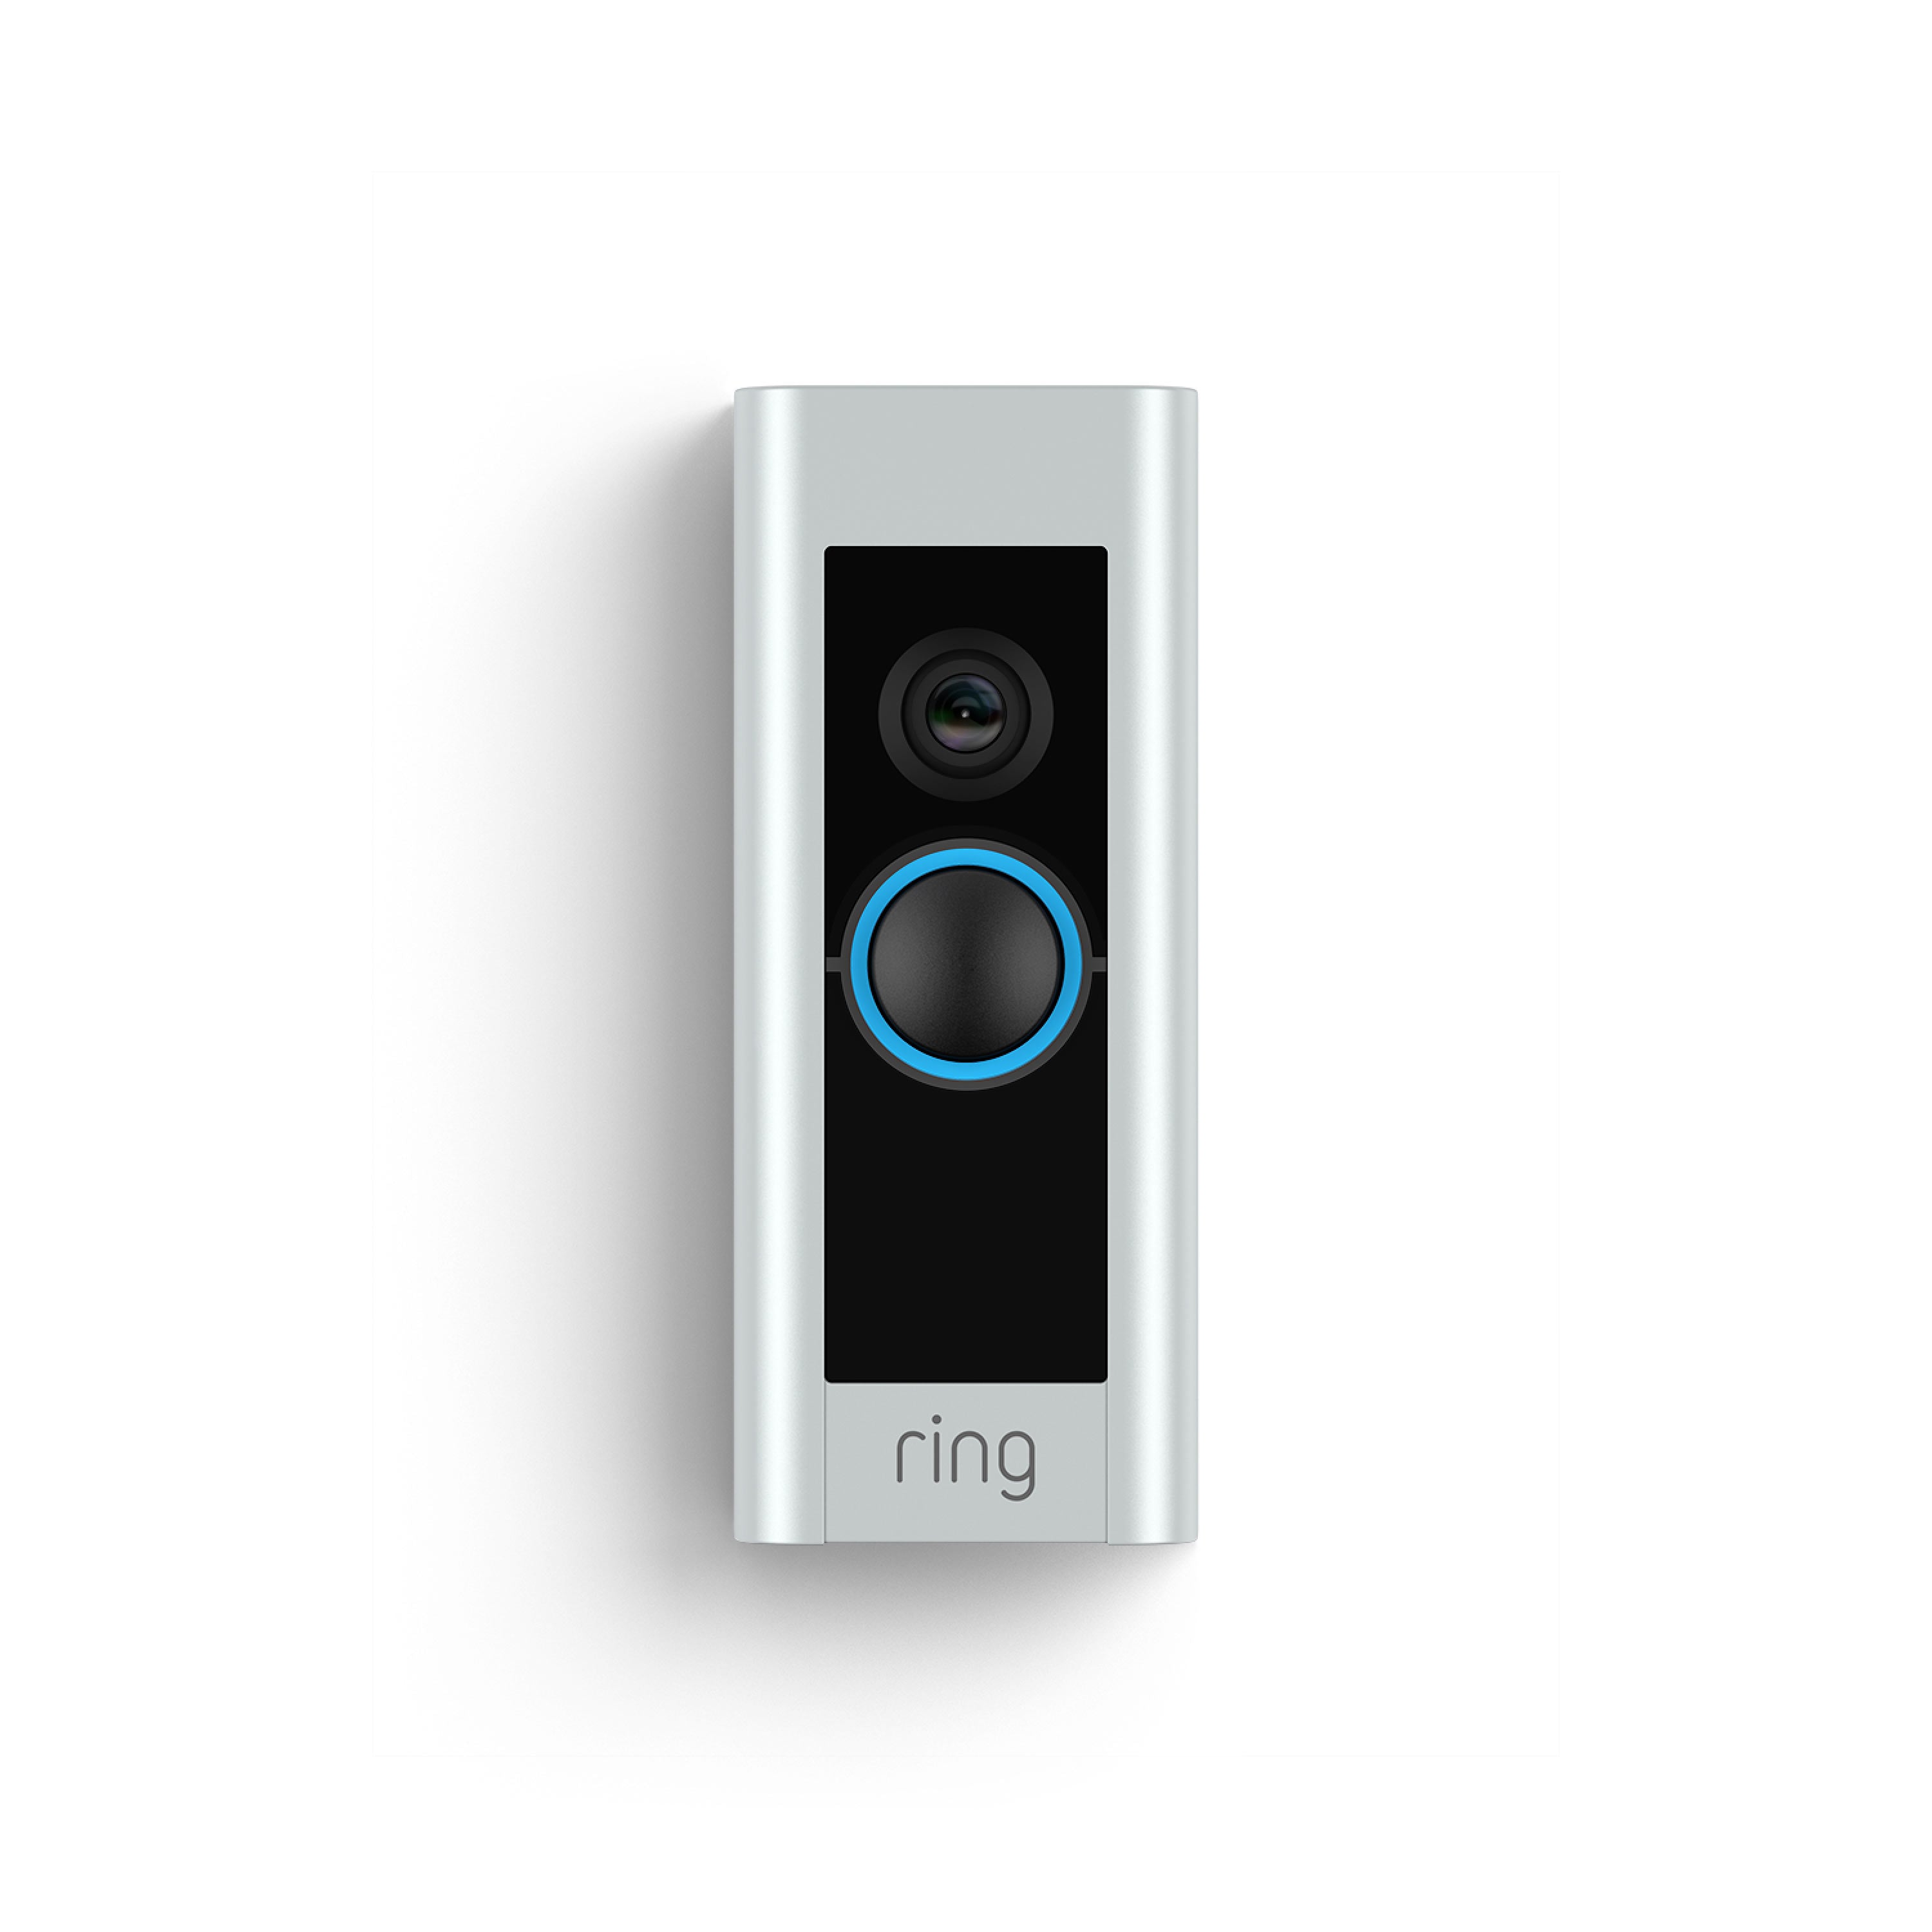 リングビデオドアベルプロWi-FiハードワイヤードHDカメラの暗視、Alexaで動作するRing Video Doorbell Pro Wi-Fi Hardwired HD Camera Nig